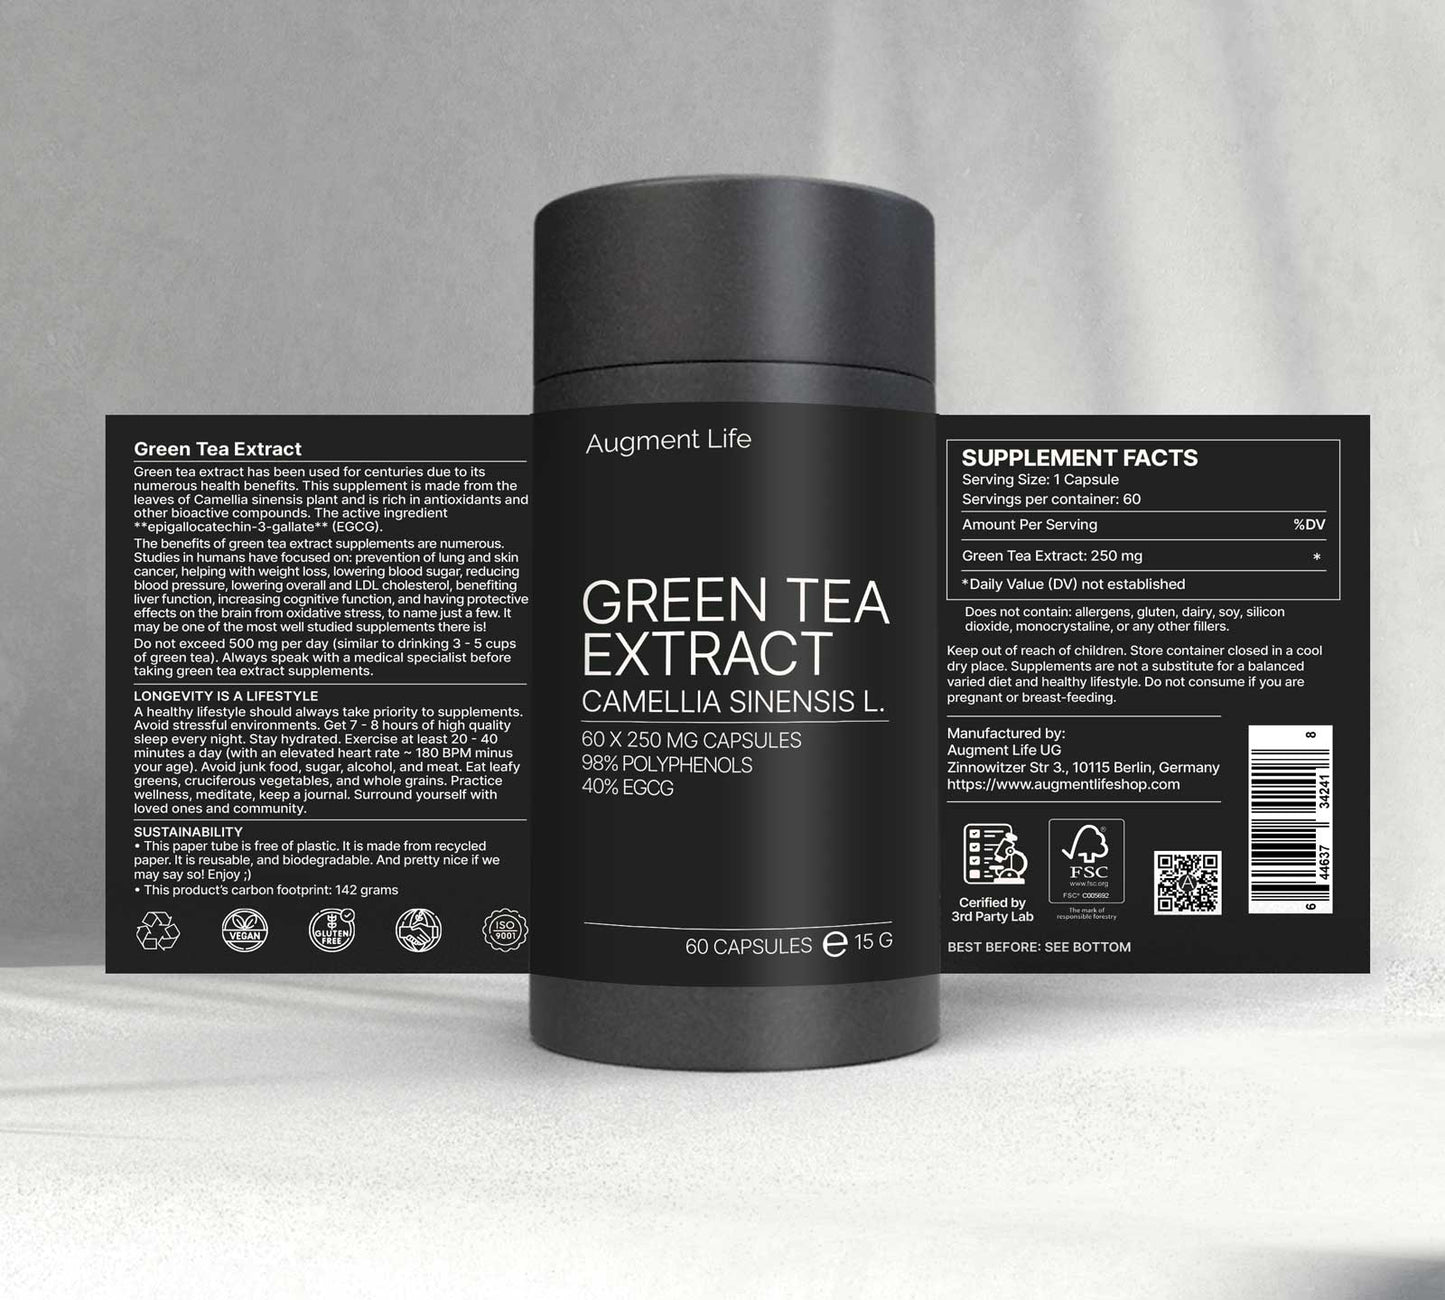 Ekstrakt af grøn te - 250 mg kapsler - 40% EGCG - Camellia Sinensis L.